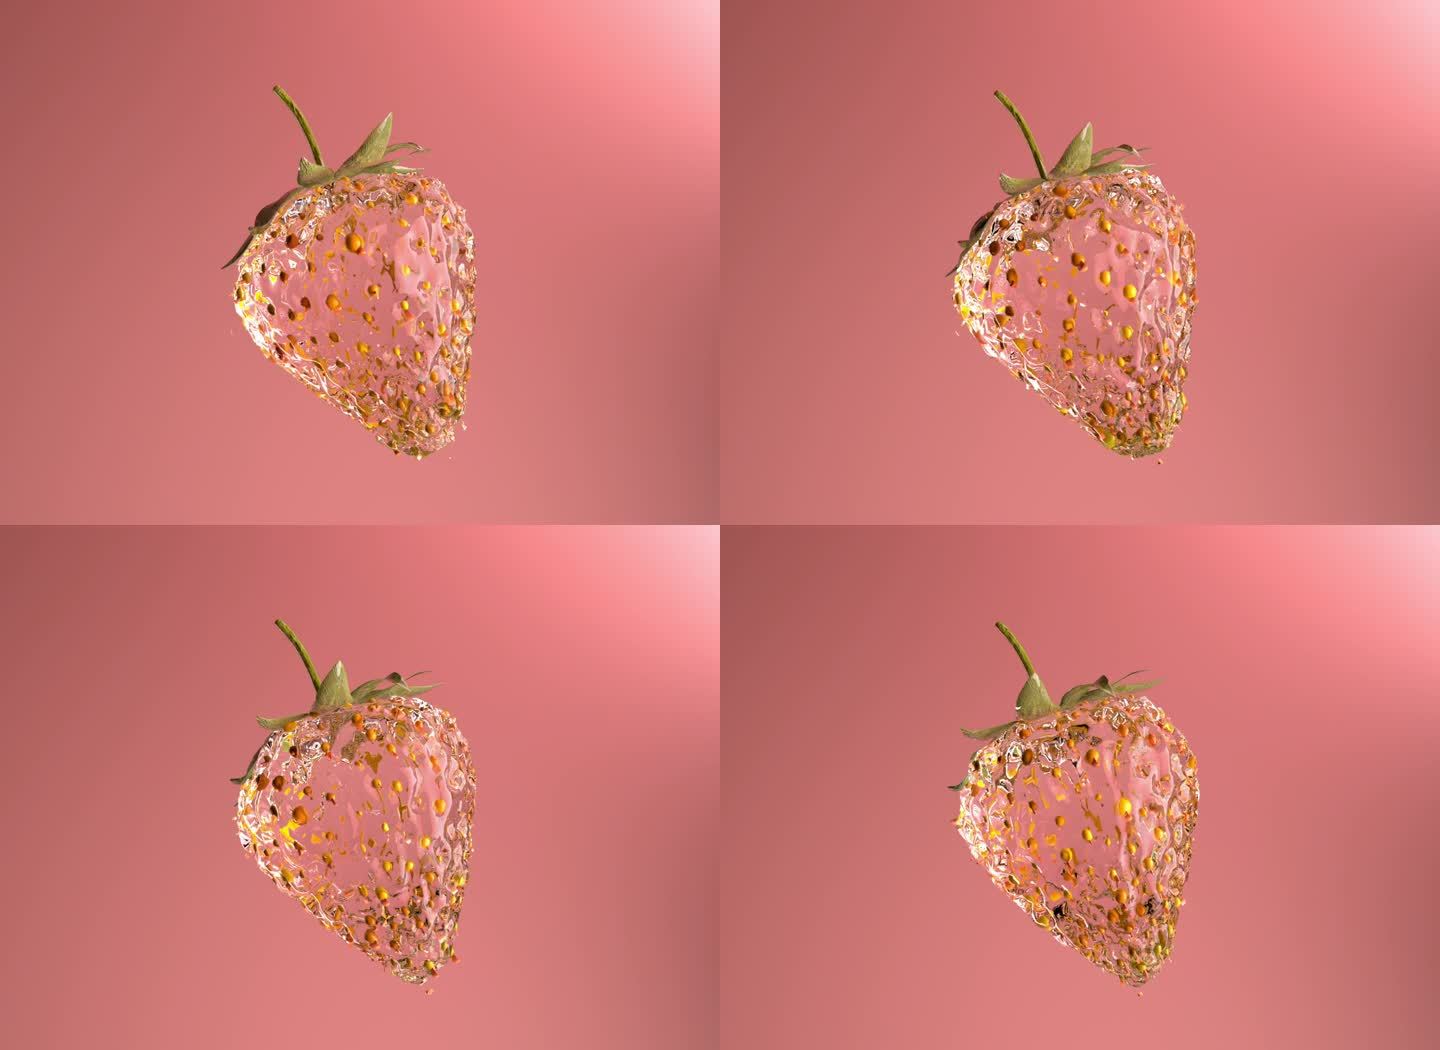 水晶草莓旋转特写